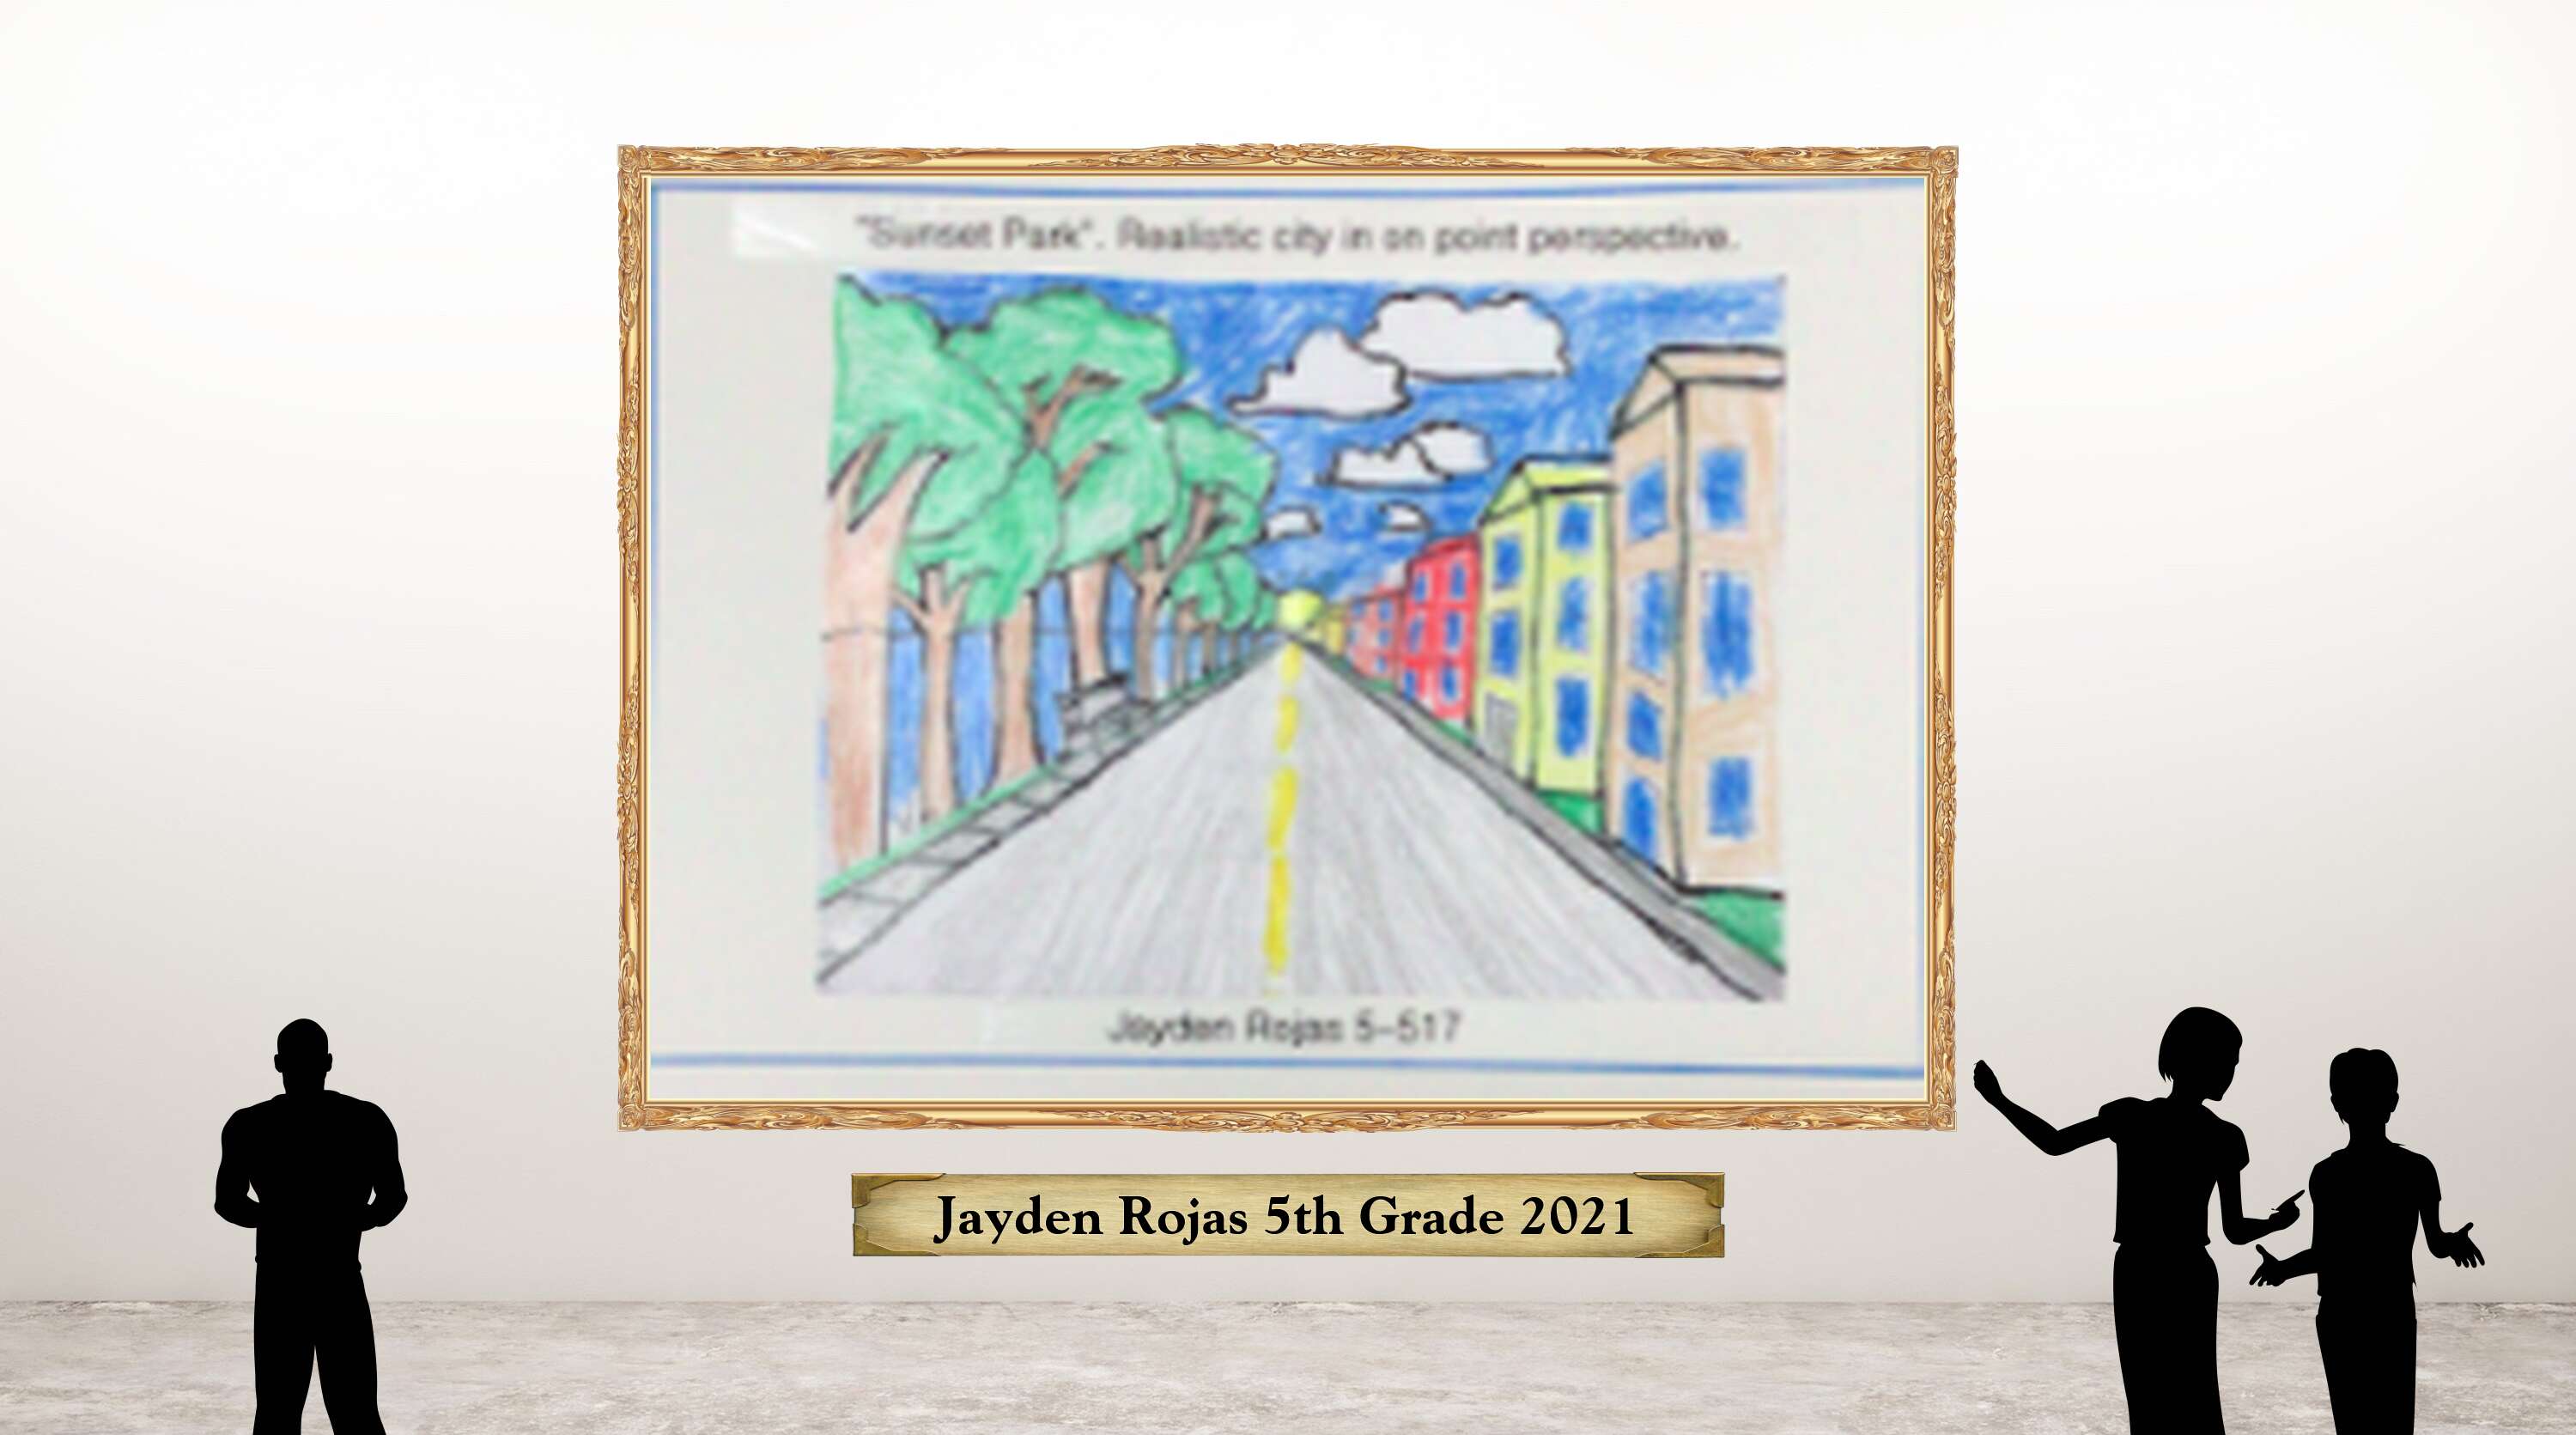 Jayden Rojas 5th Grade 2021